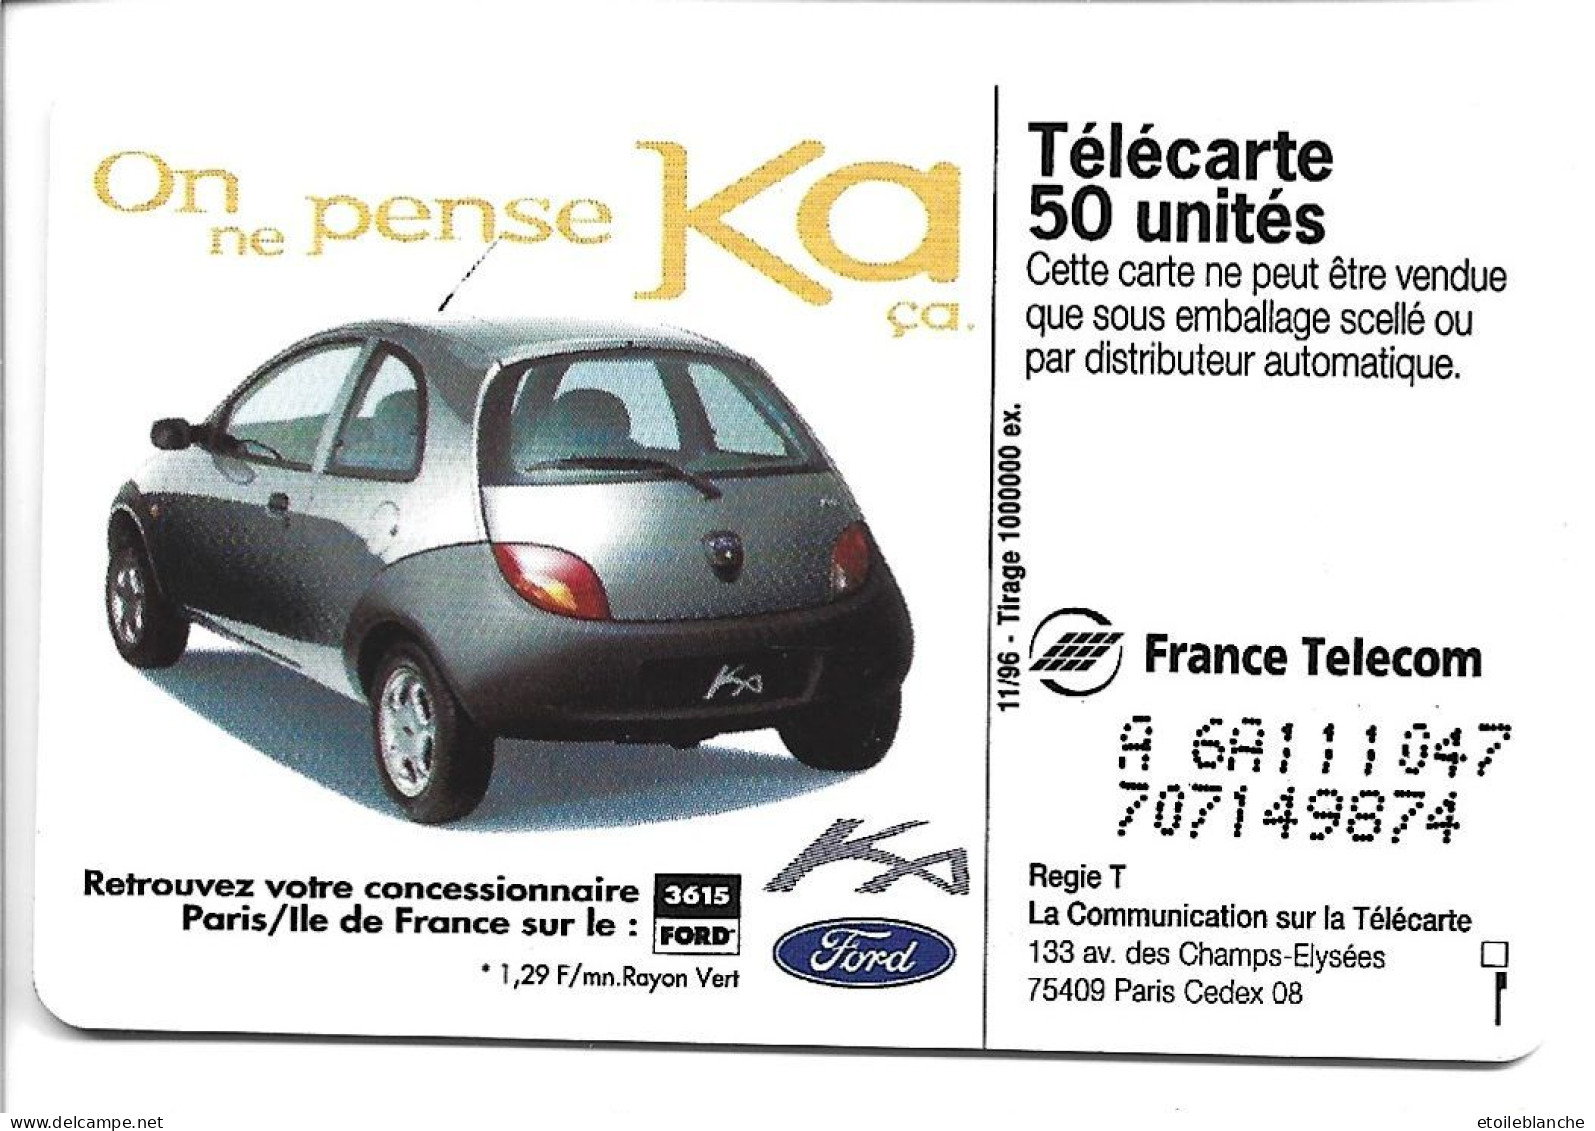 Telecarte Publicité Voiture Ford KA, On Ne Pense Qu'à ça -  Concessionnaire Paris Sur Minitel 3615 Ford - Auto's